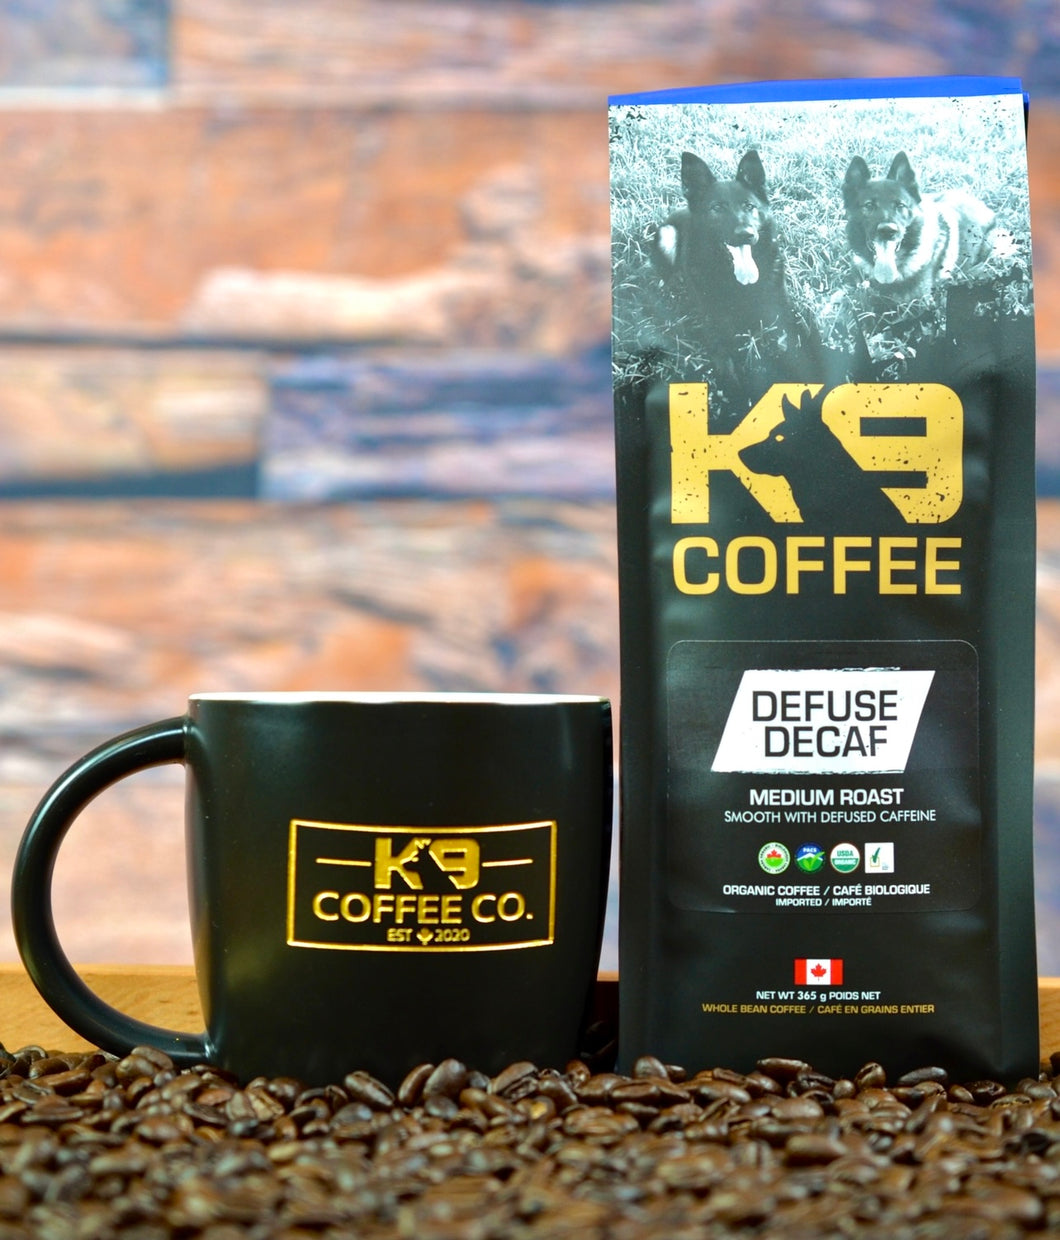 K9 Coffee DEFUSE DECAF Medium Roast Organic Coffee